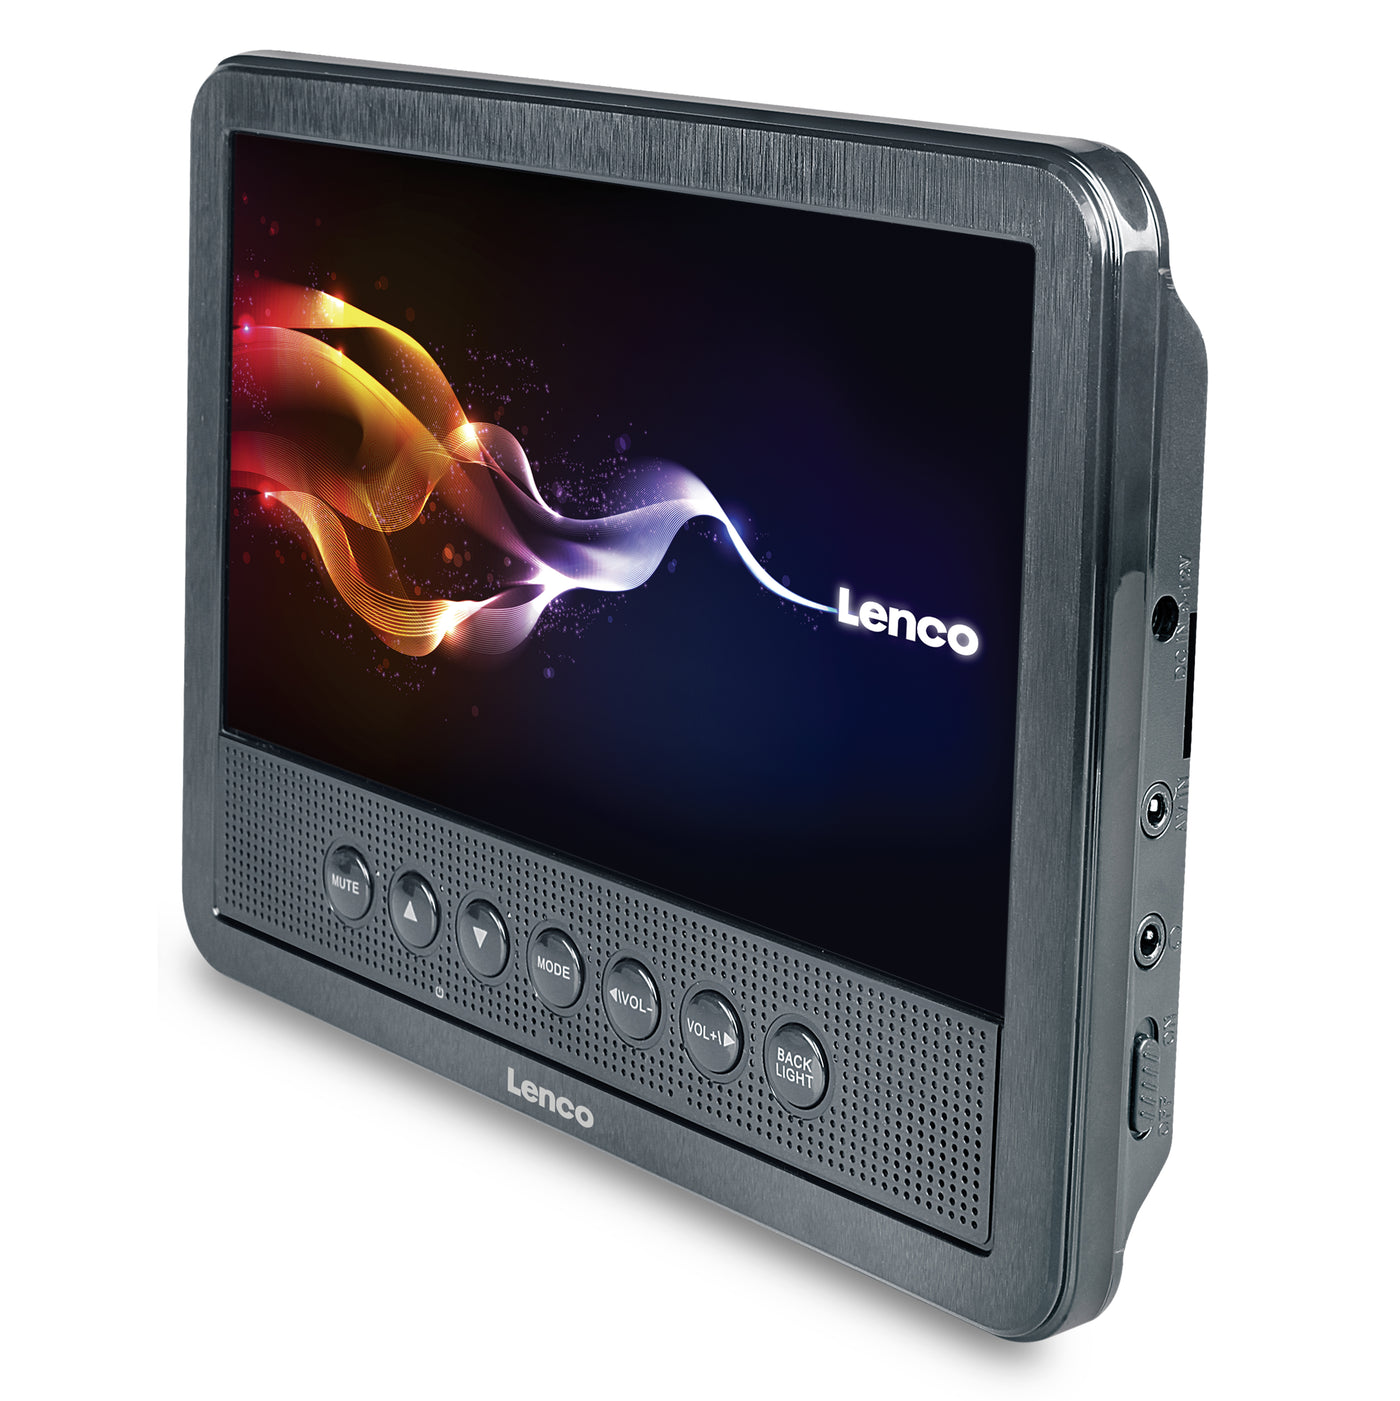 LENCO MES-212 - Przenośny odtwarzacz DVD 7" z podwójnym wyświetlaczem i portem USB - Czarny